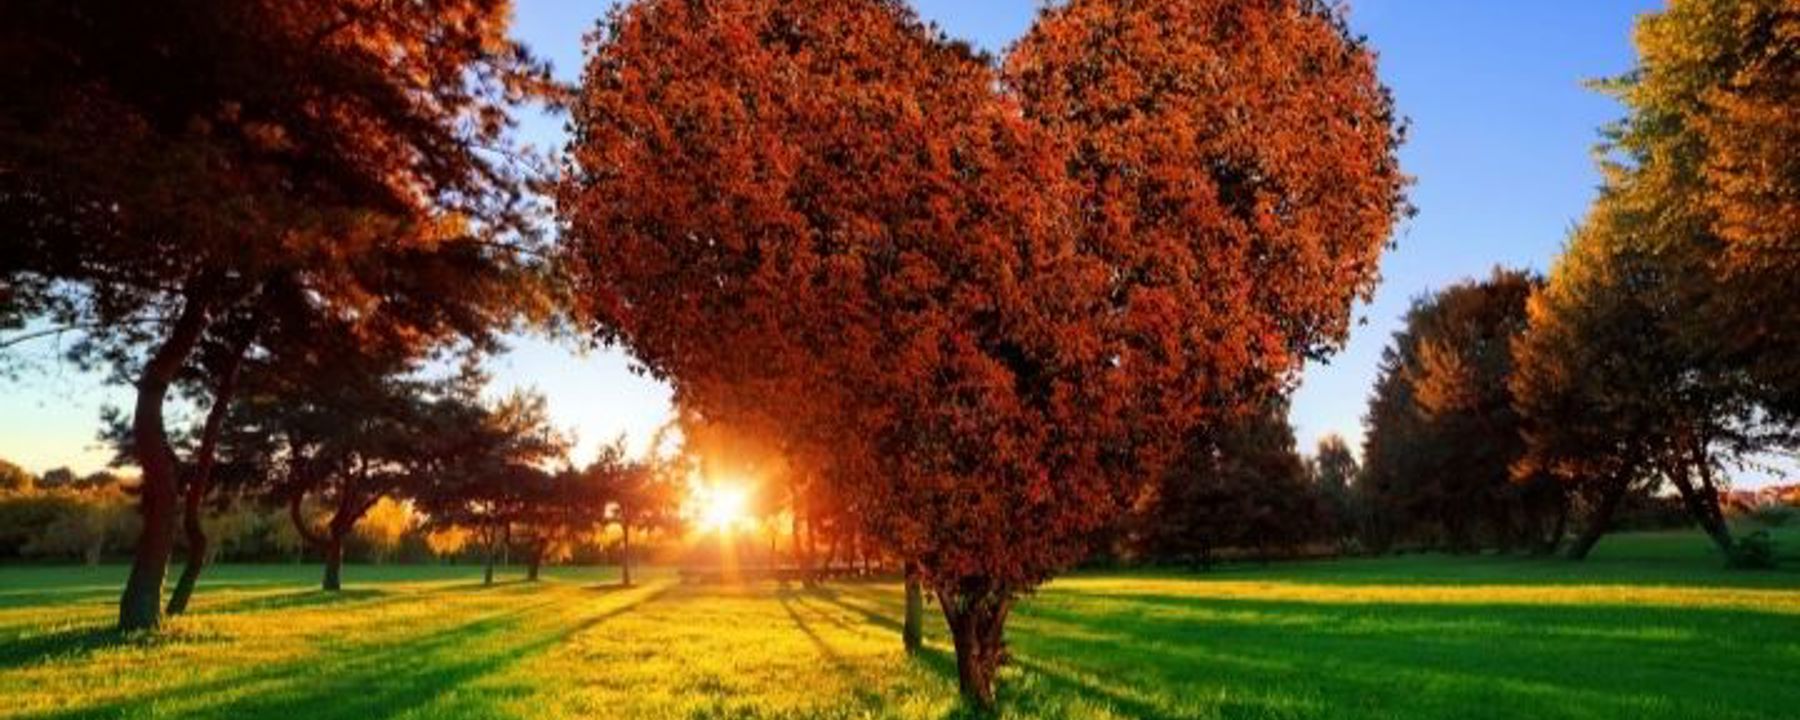 Stort hjärtformat lövträd i höstfärger, på gräsmatta. Nedgående sol i bakgrunden.